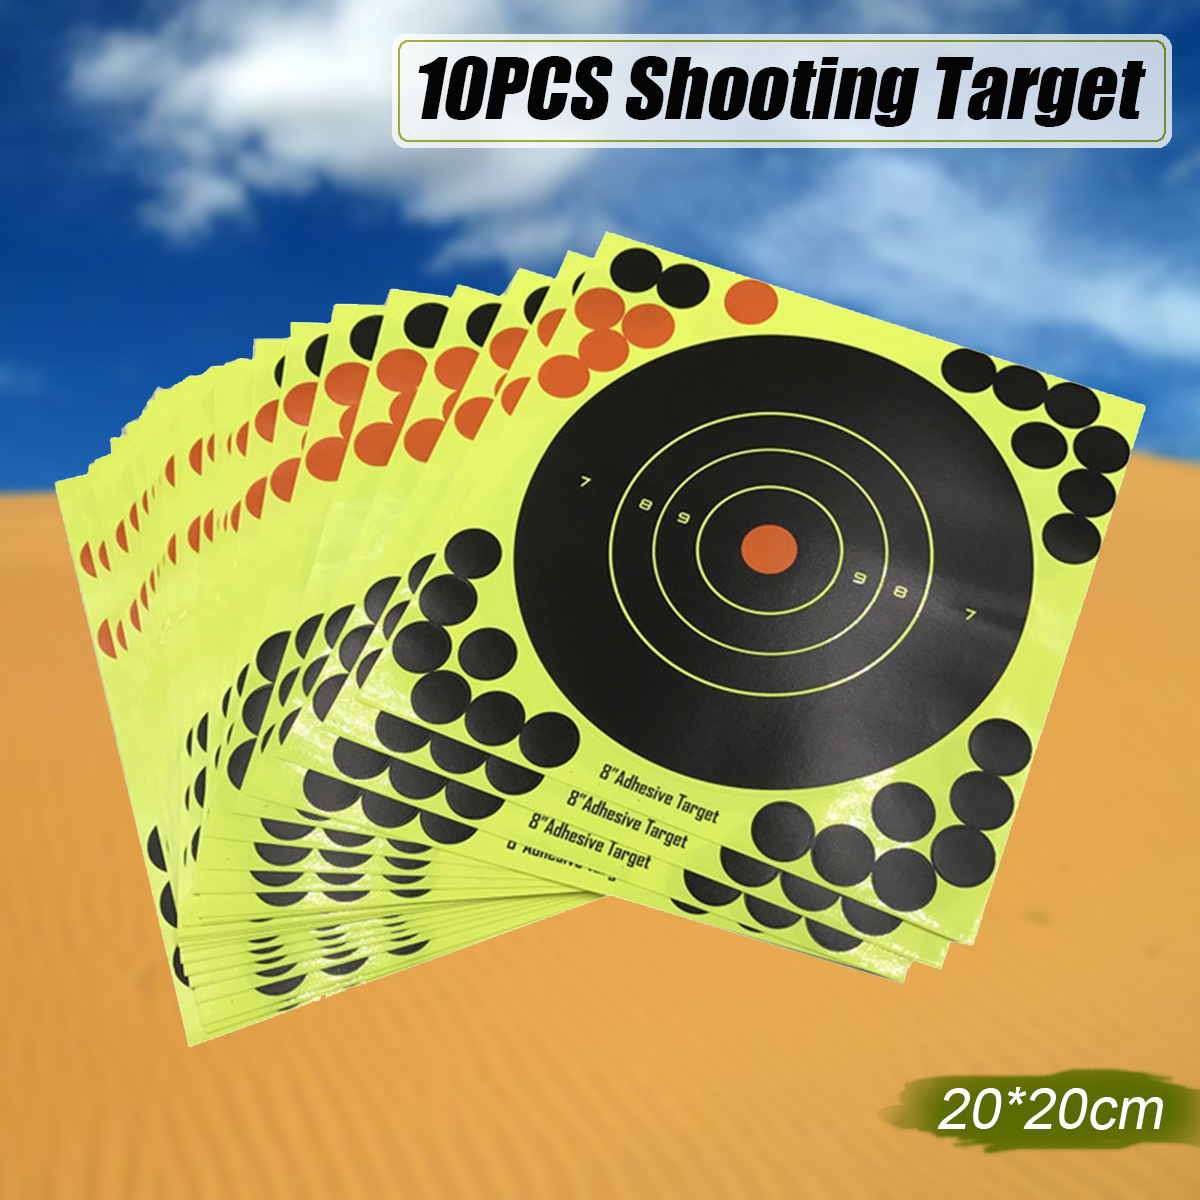 10PCS-Shooting-Adhesive-Targets-Splatter-Reactive-Target-Sticker-Paper--2020CM-1637261-1